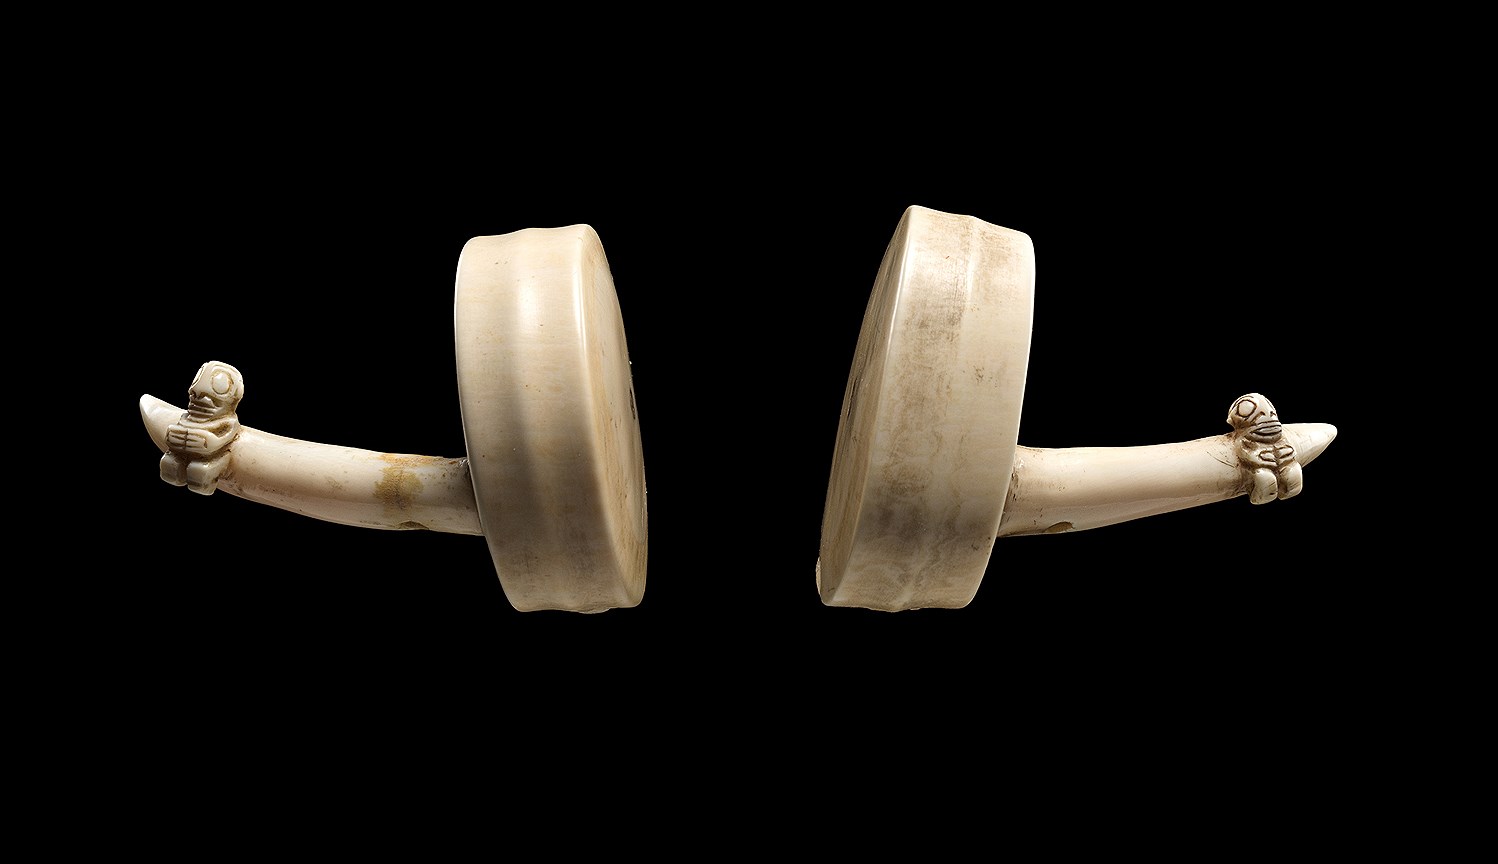 Украшения для ушей из китовой кости, н. XIX века, Маркизские острова 